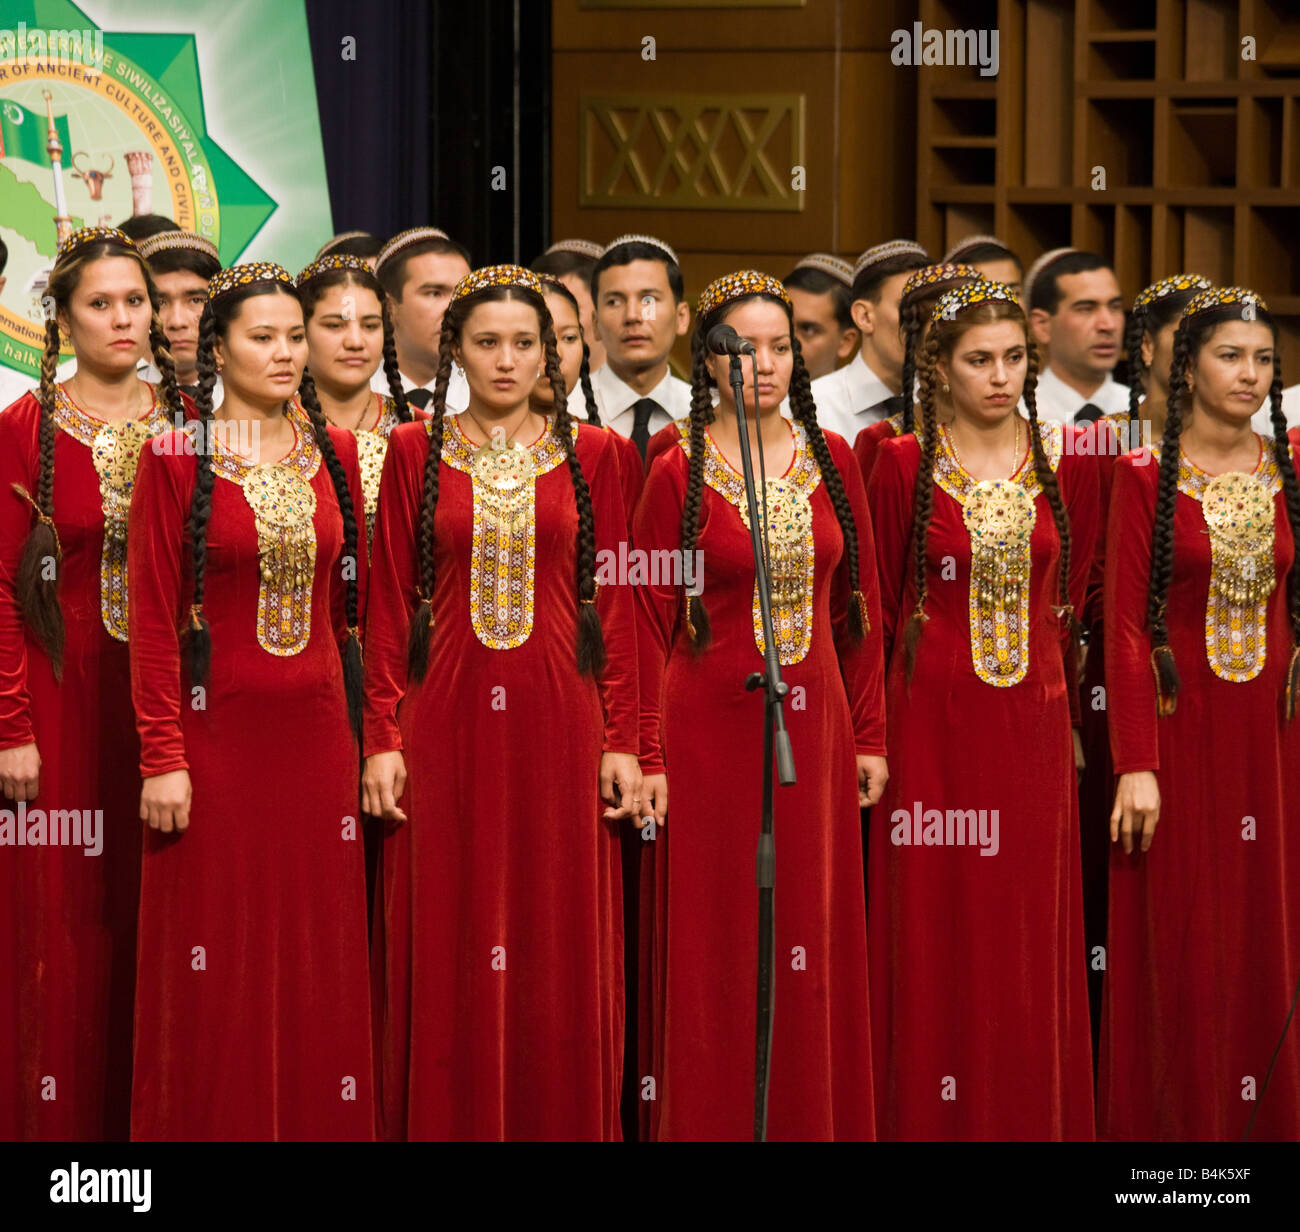 Coro in costume nativa in apertura della conferenza internazionale, Ashqabat, Turkmenistan Foto Stock